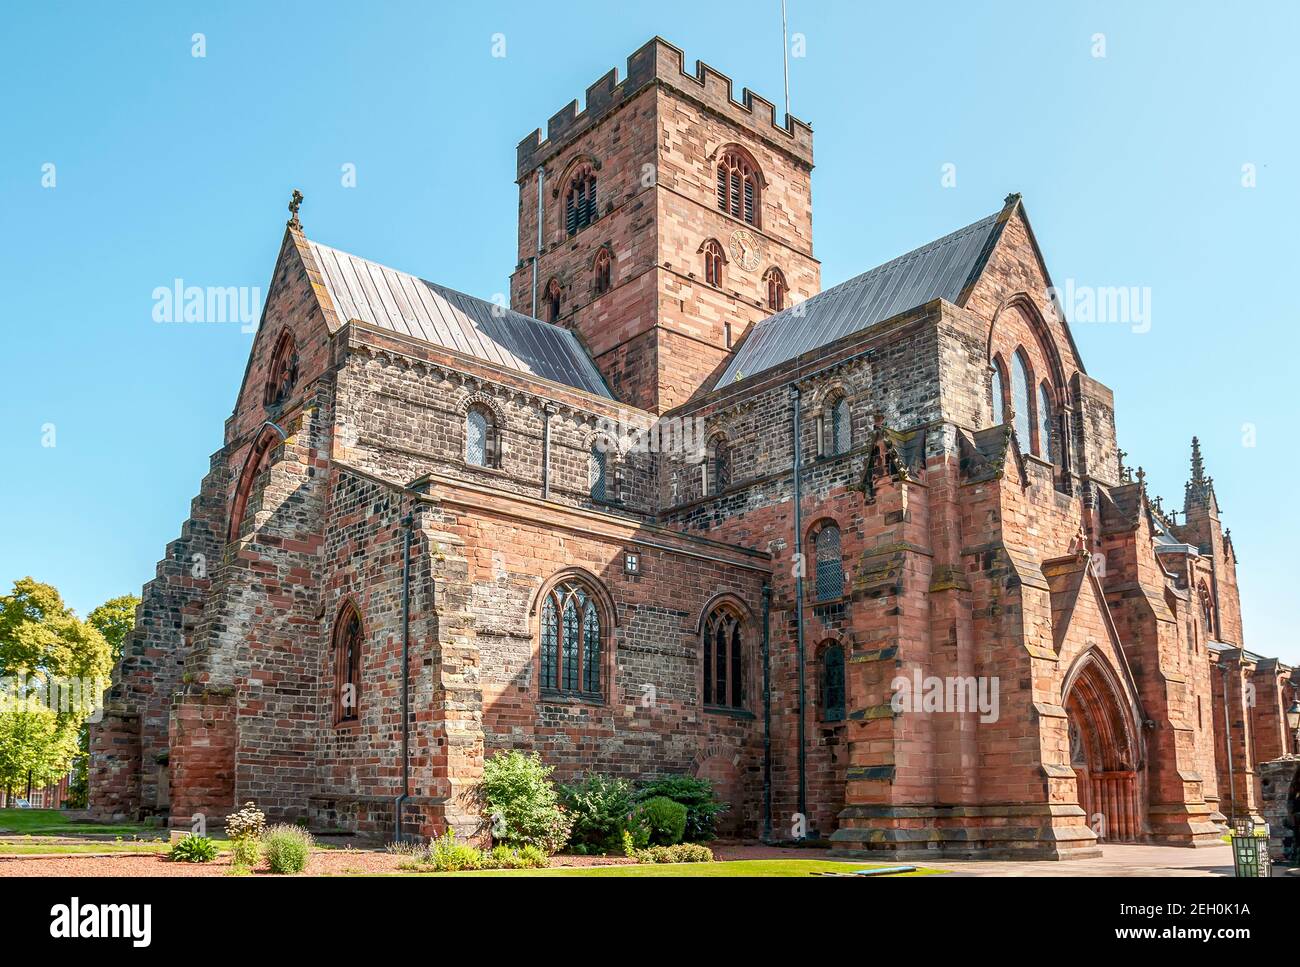 Façade de la cathédrale de Carlisle, Cumbria, Angleterre, Royaume-Uni Banque D'Images